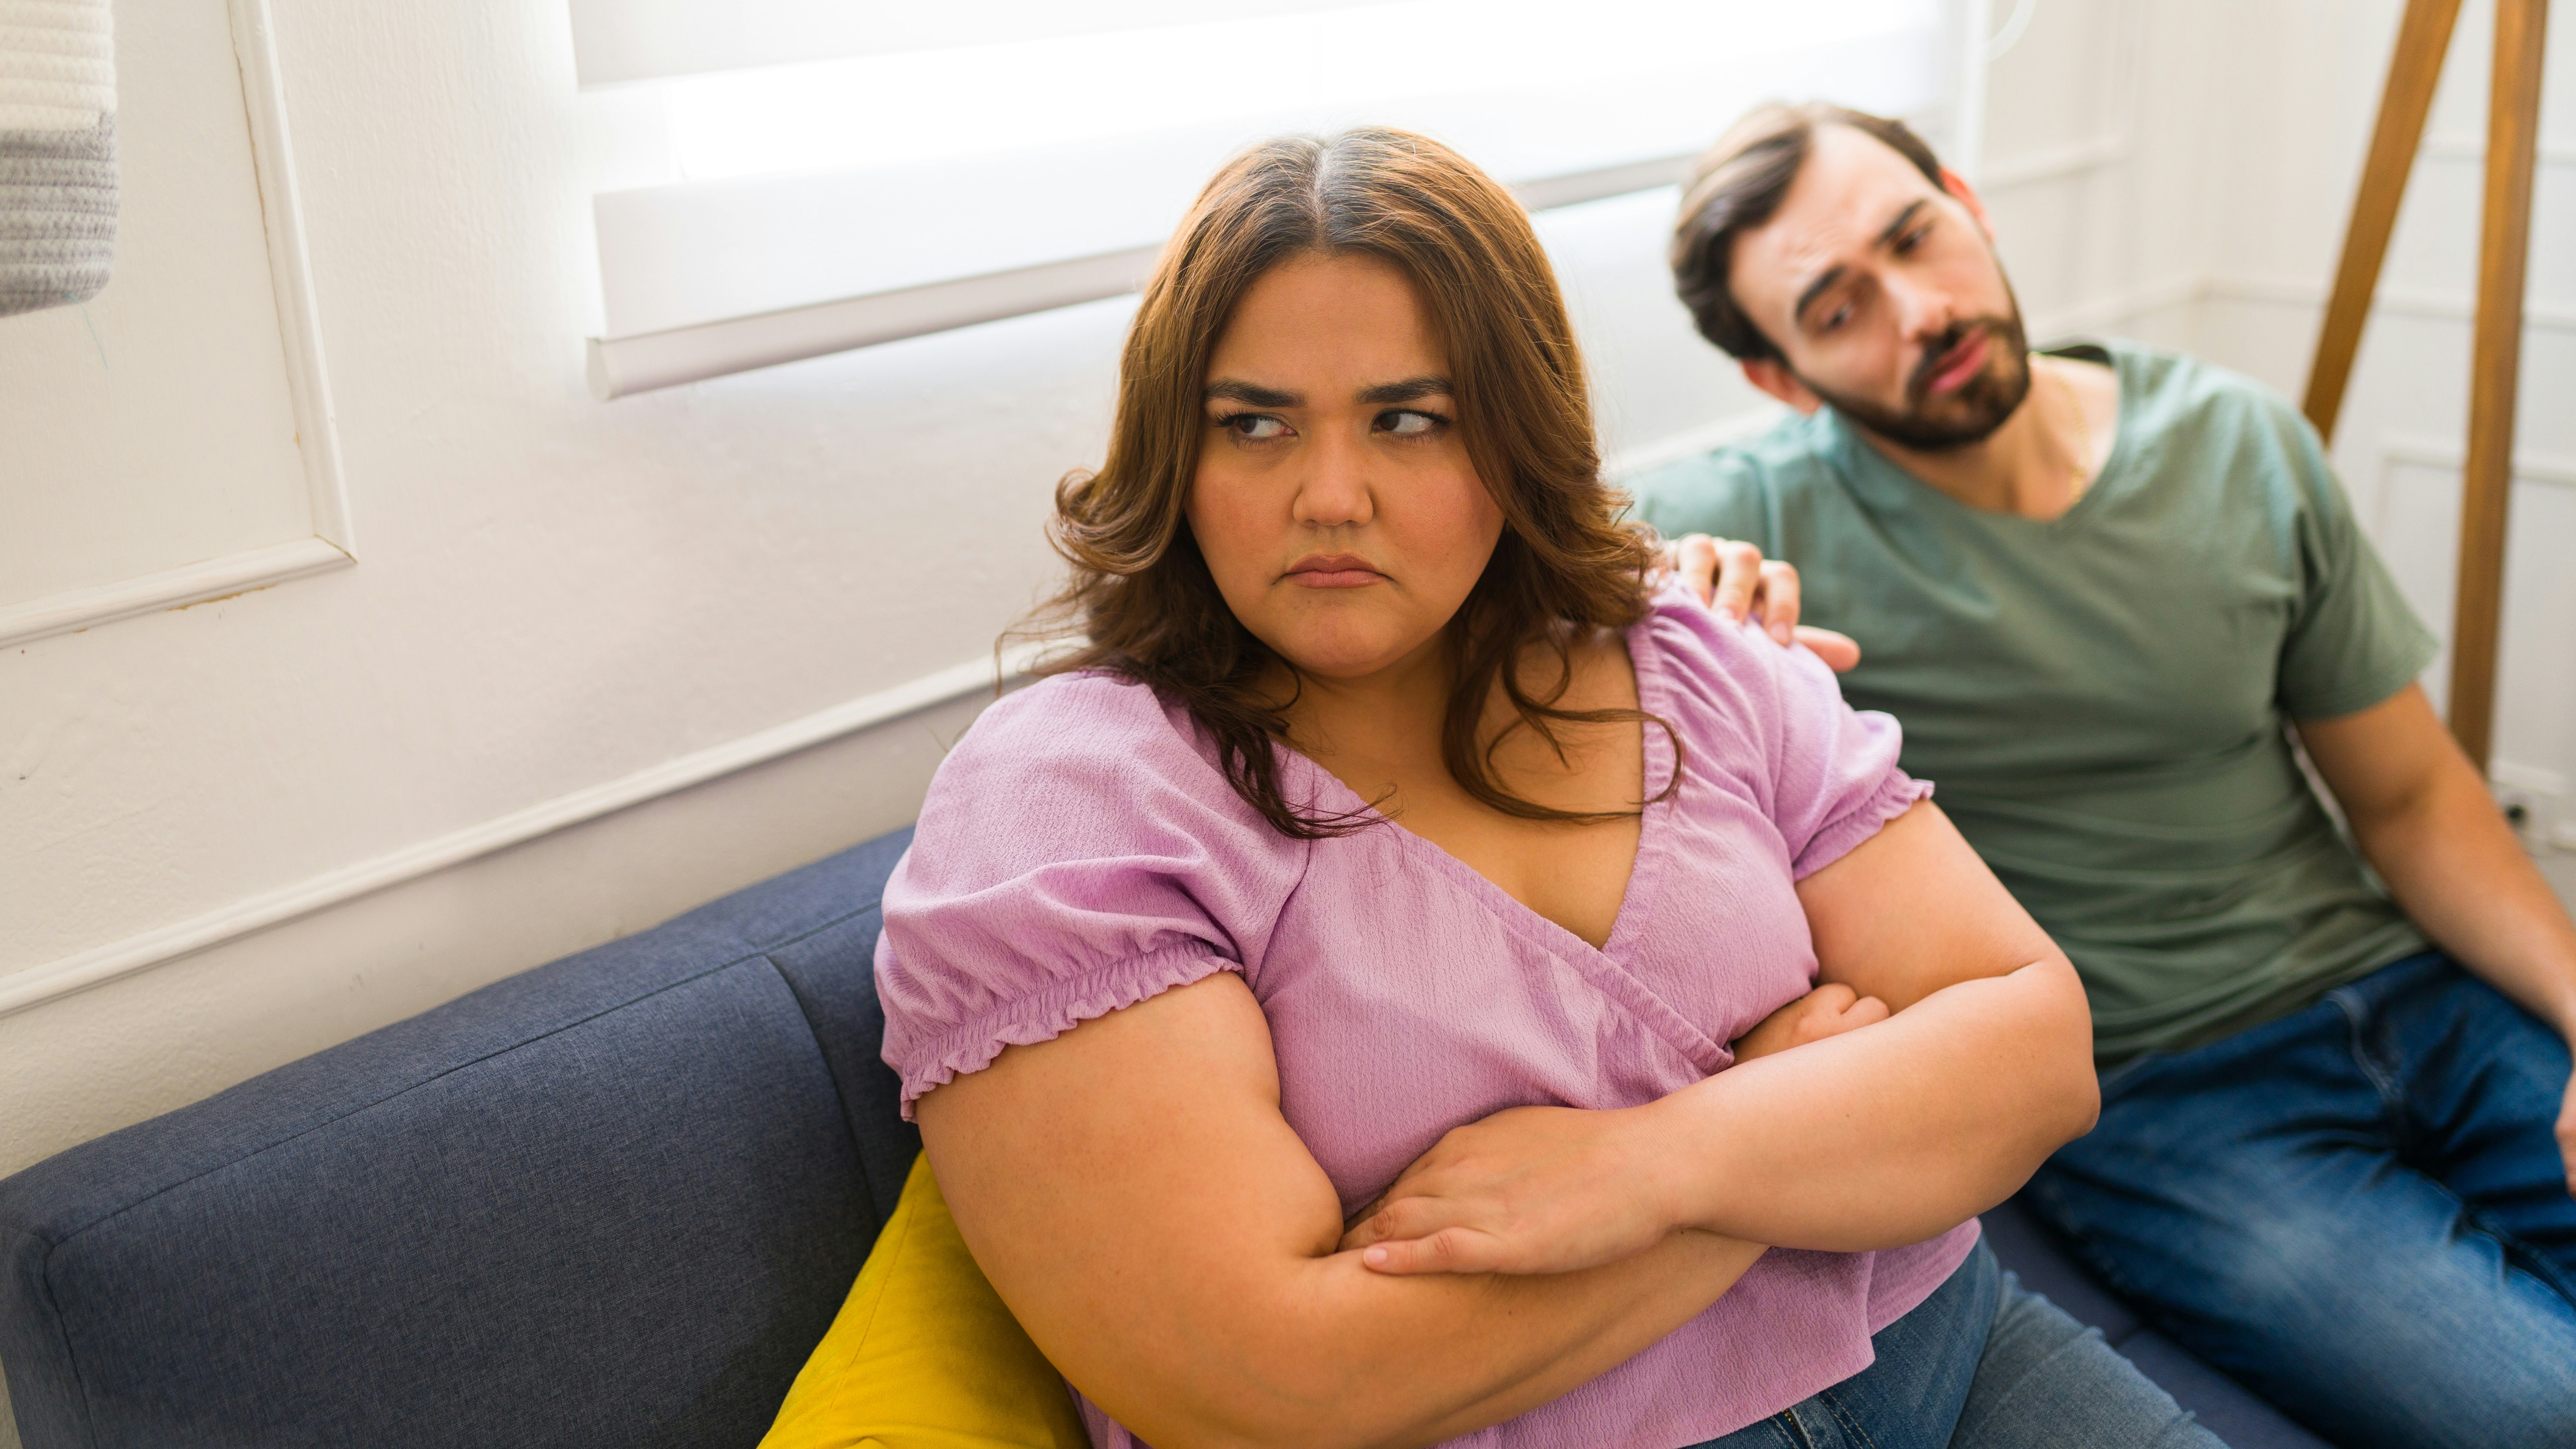 Overvægtig kvinde ser trist ud, mens hendes mand ser til i baggrunden.